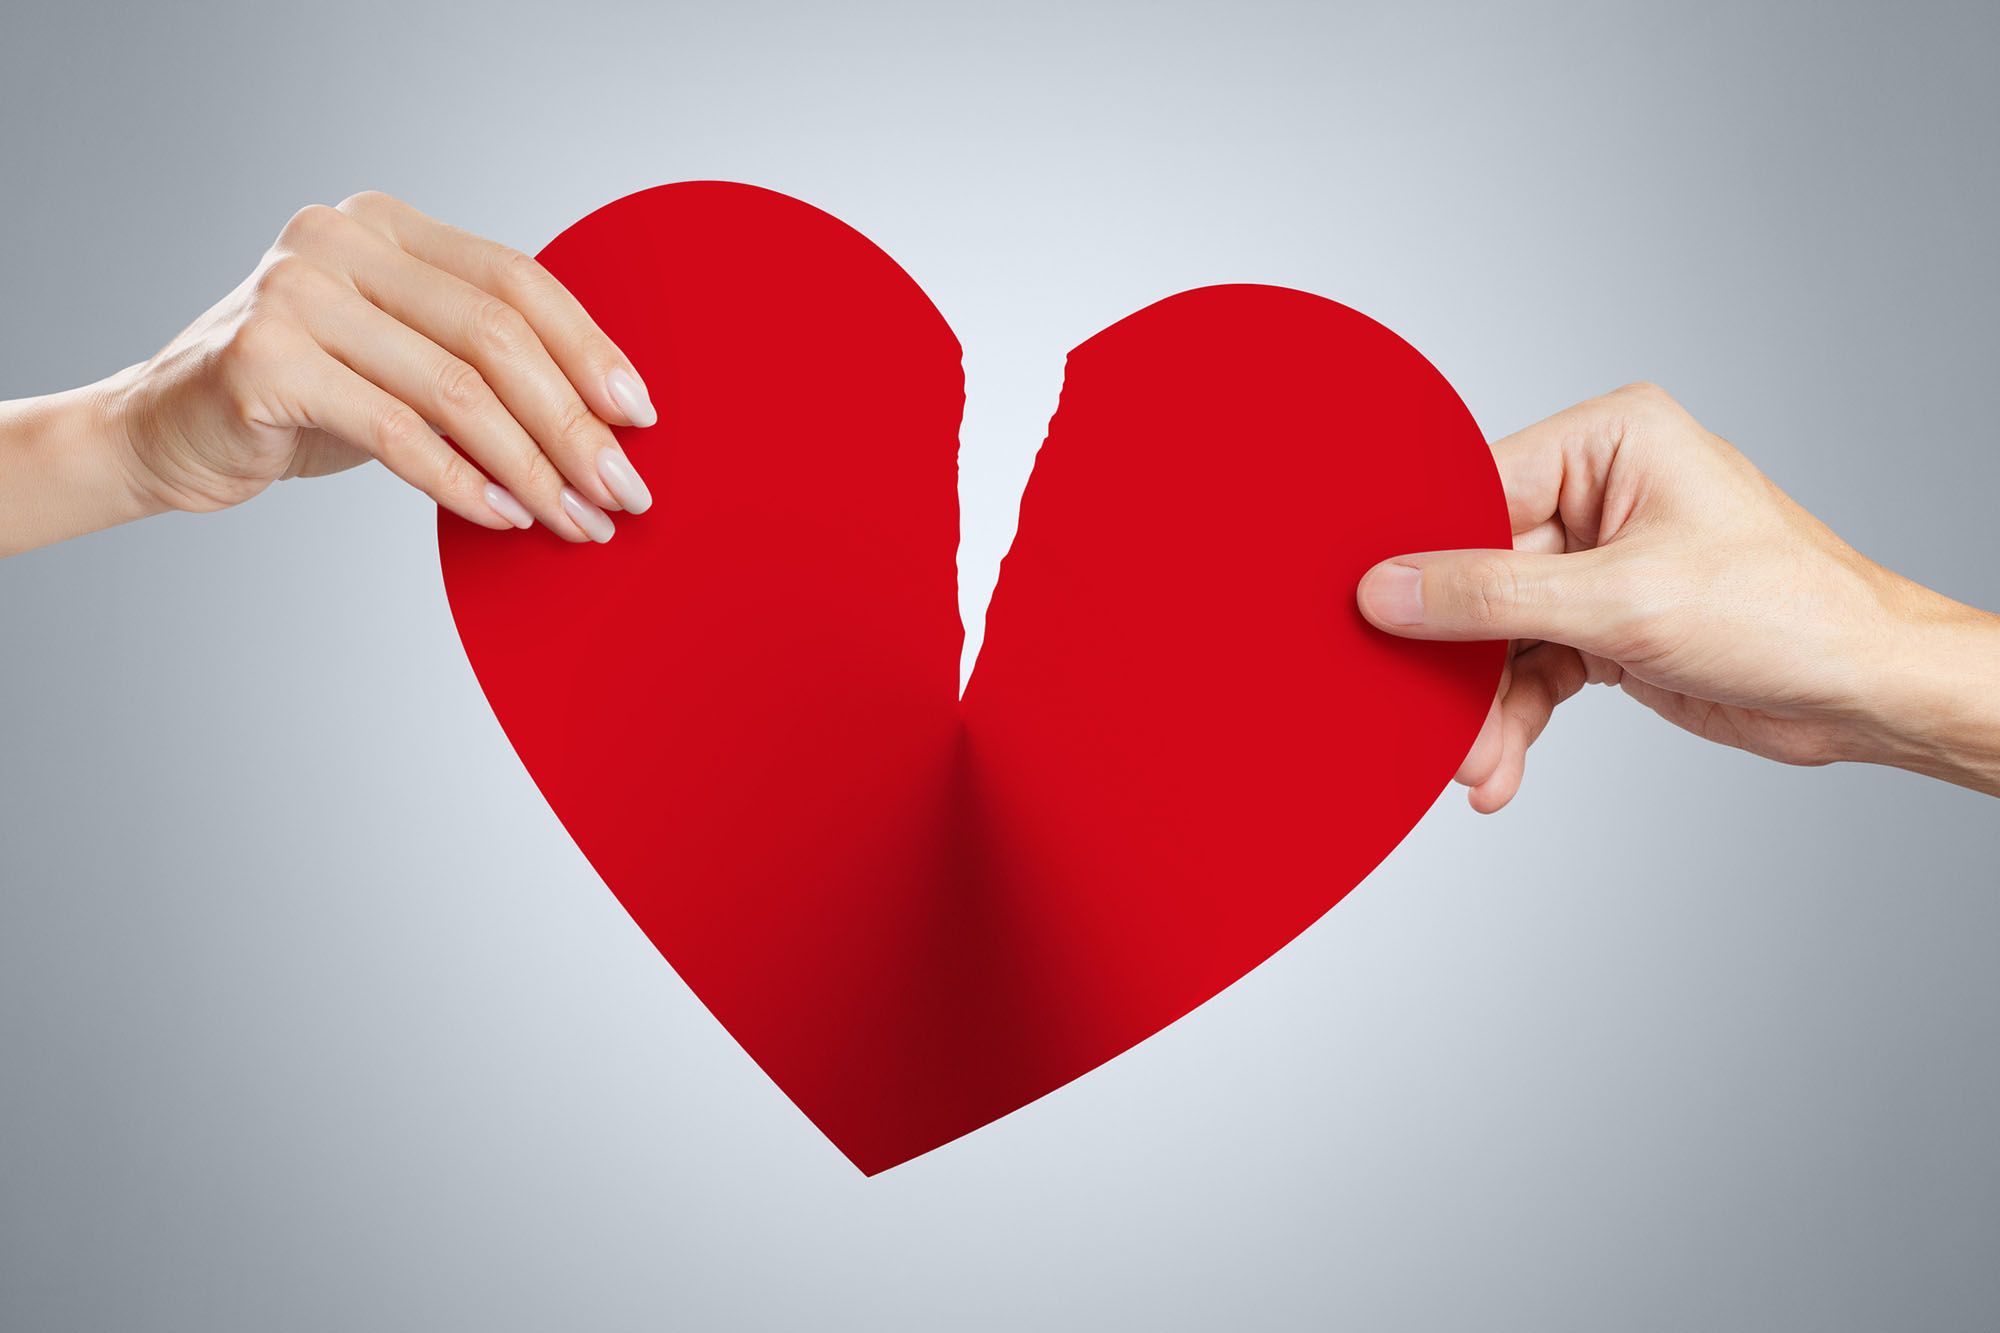 Filme gegen Liebeskummer - Abbildung eines Papier-Herzens, welches von zwei Händen zerrissen wird.